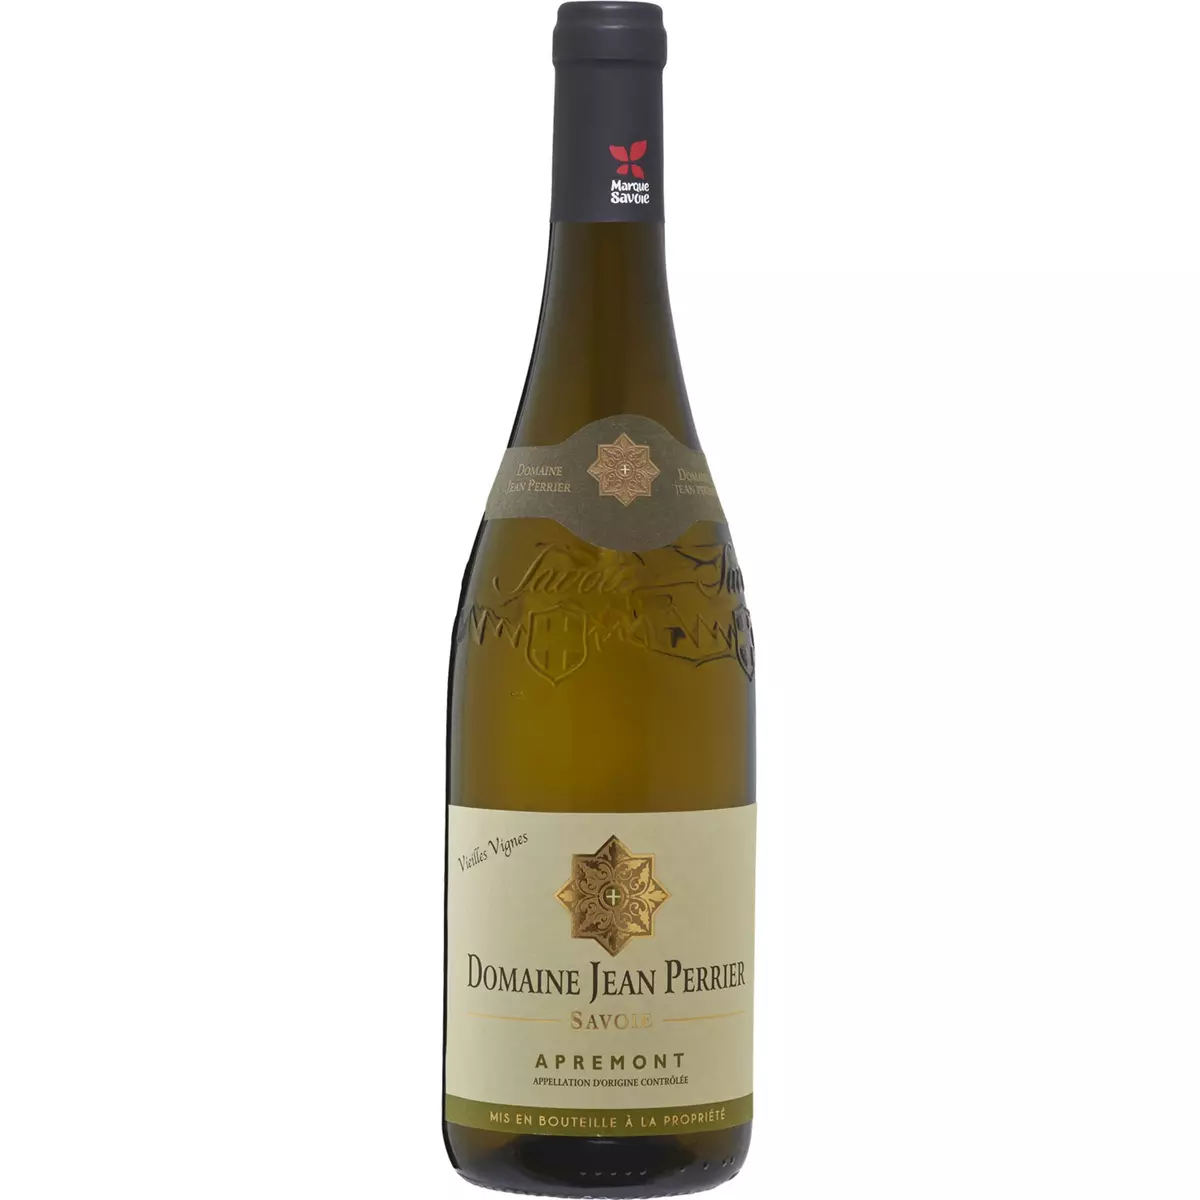 AOP Savoie Apremont Domaine Jean Perrier Vieilles Vignes blanc 2019 75cl